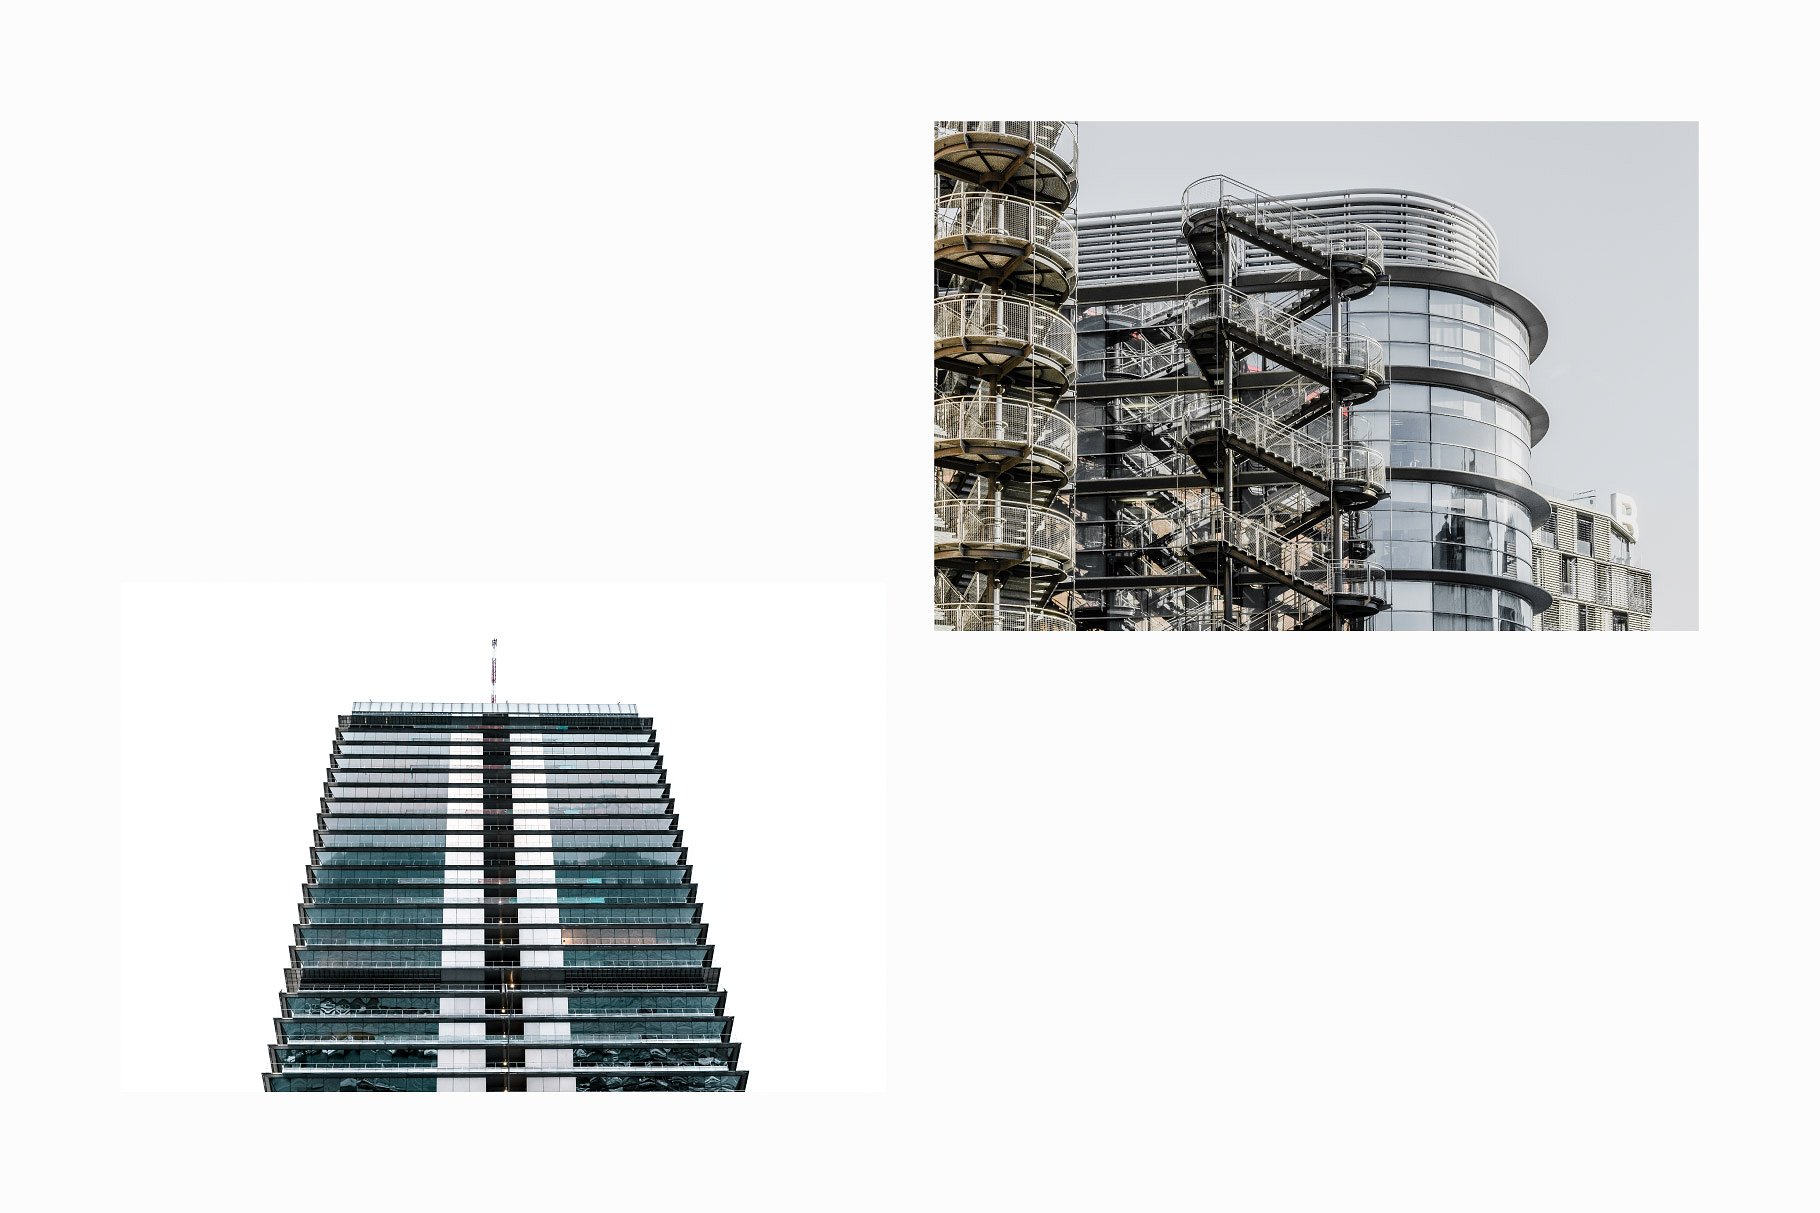 10张高分辨率建筑照片V.3 10 Architecture Photos Pack Vol.3插图(4)